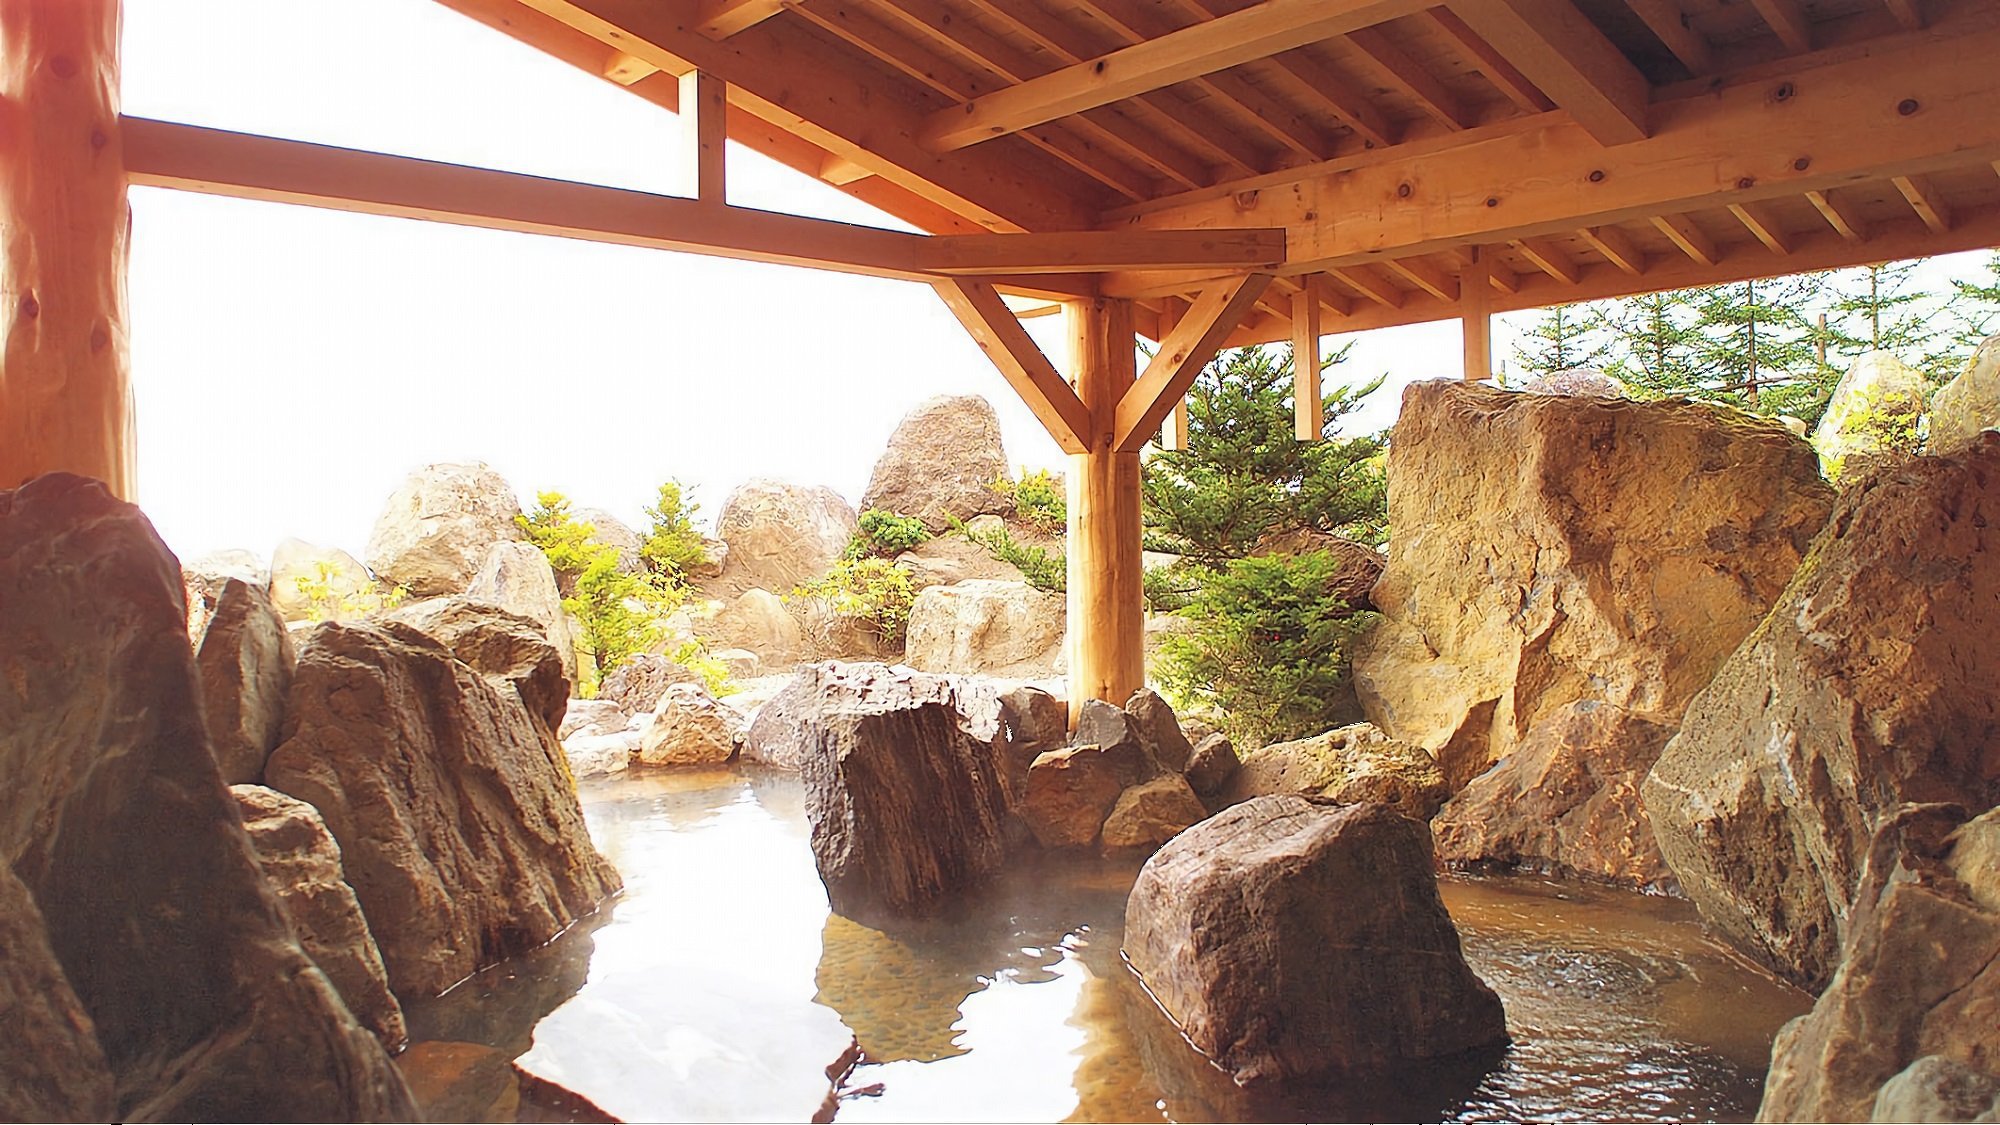 【1F和風大浴場】700tもの岩石を組み上げた野趣あふれる庭園の露天風呂